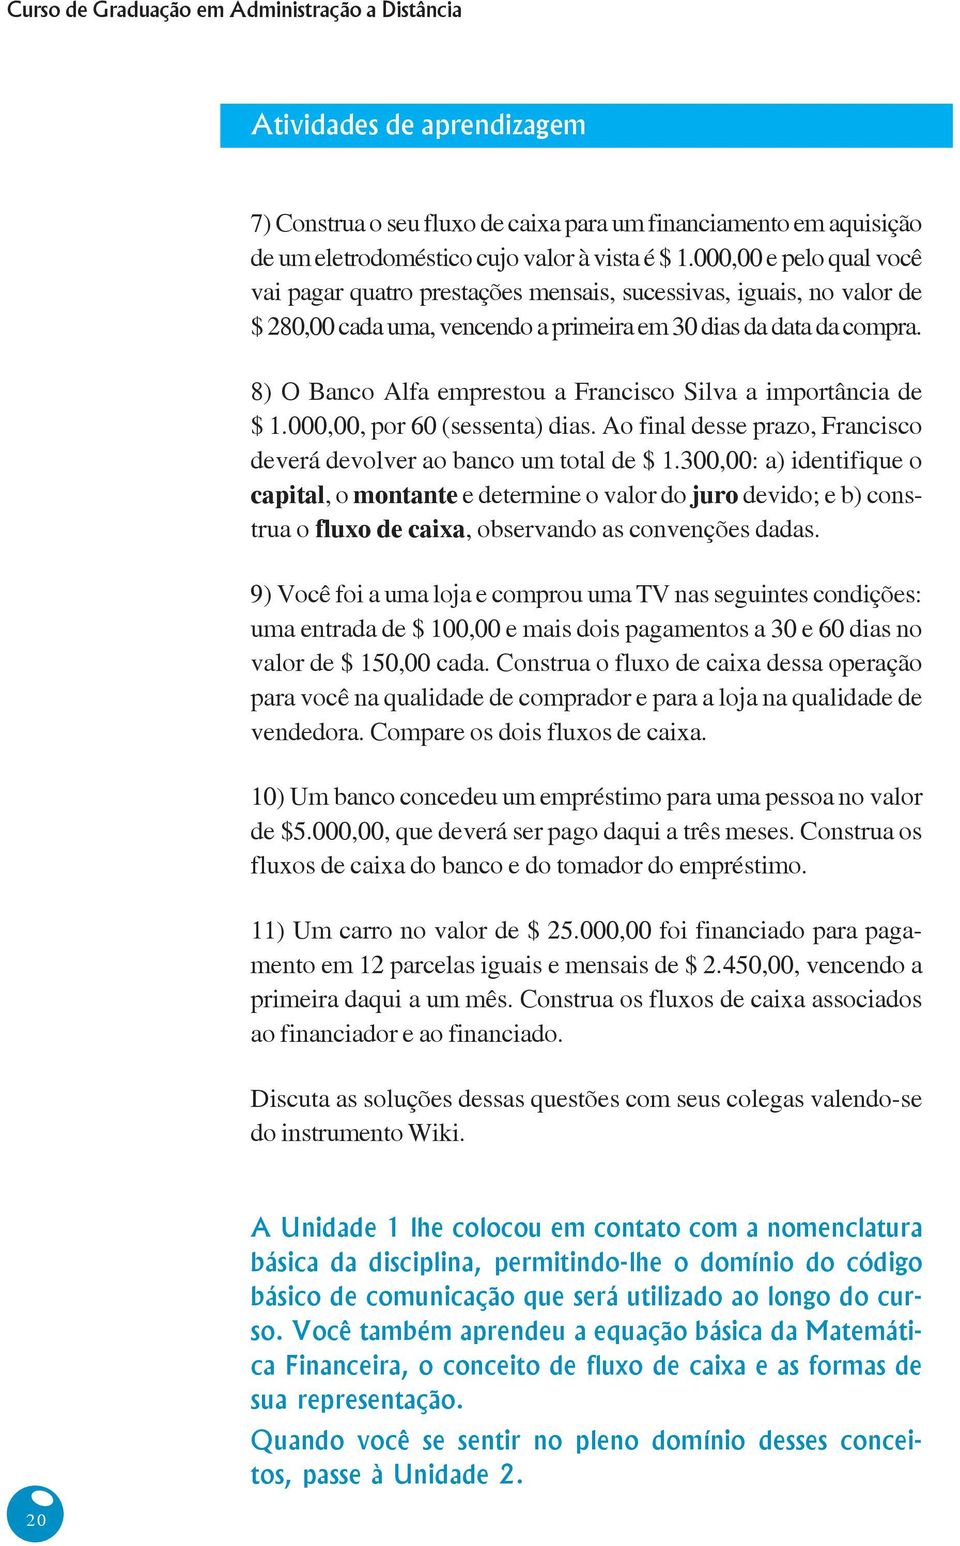 8) O Banco Alfa emprestou a Francisco Silva a importância de $ 1.000,00, por 60 (sessenta) dias. Ao final desse prazo, Francisco deverá devolver ao banco um total de $ 1.